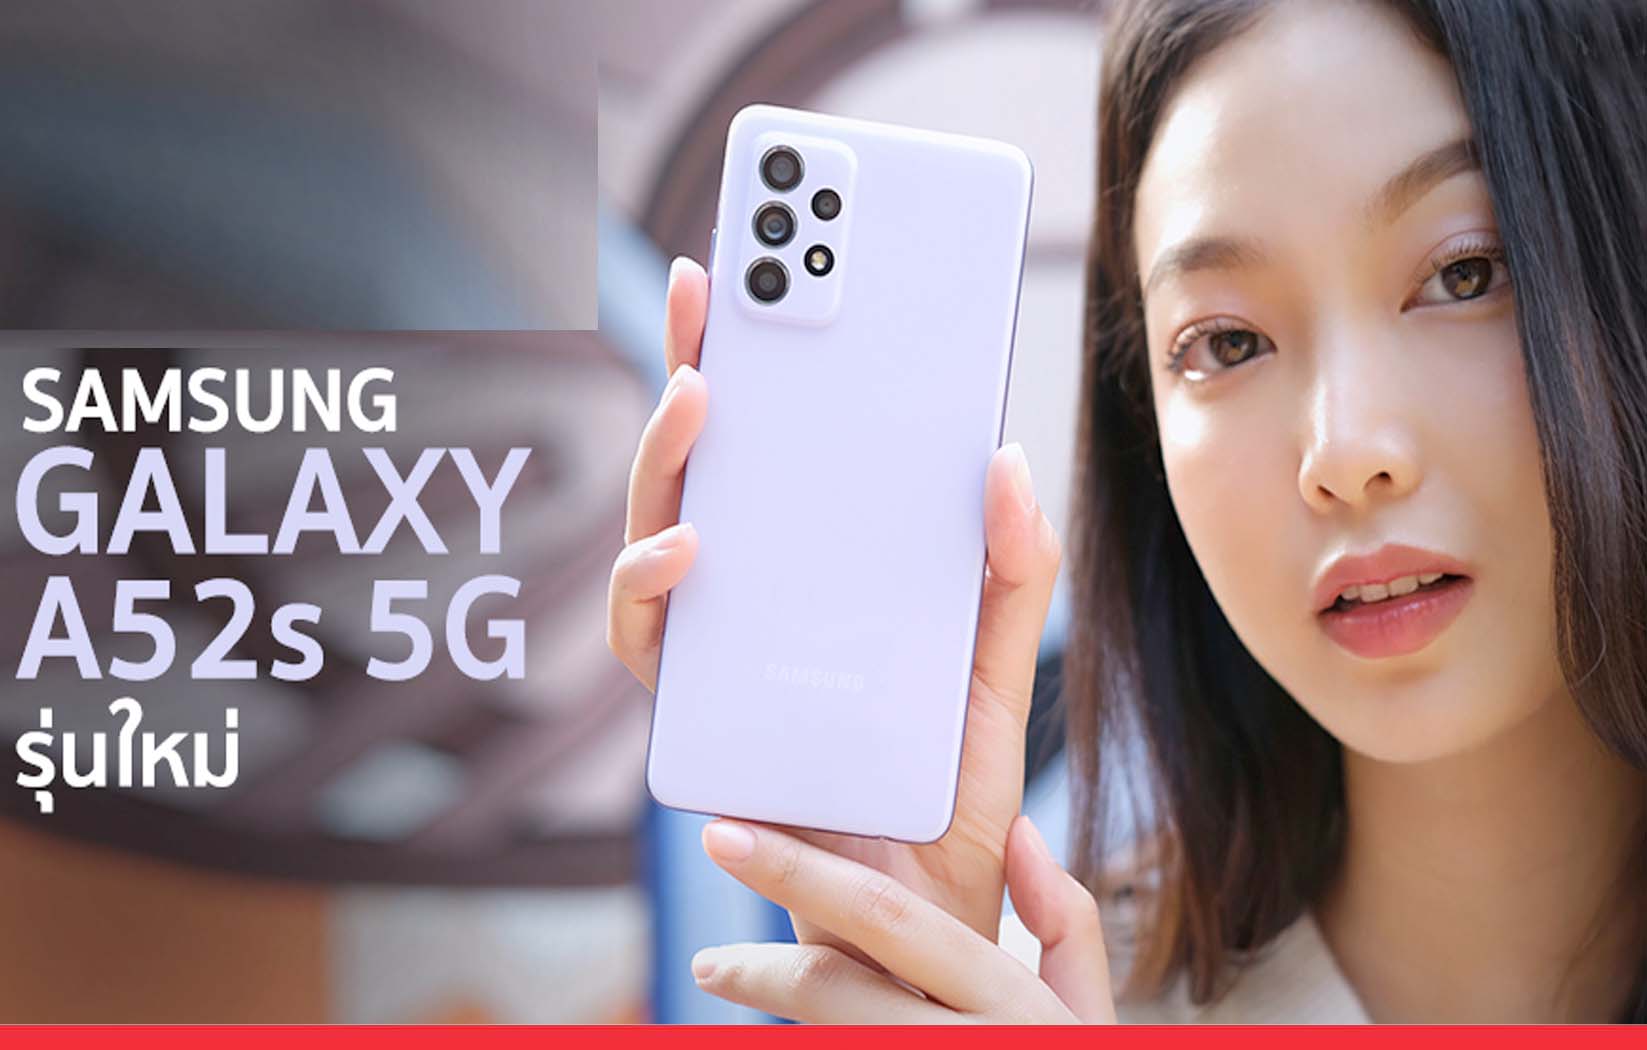 6 हज़ार रुपये सस्ता मिल रहा है सैमसंग का 64 मेगापिक्सल कैमरे वाला 5G फोन